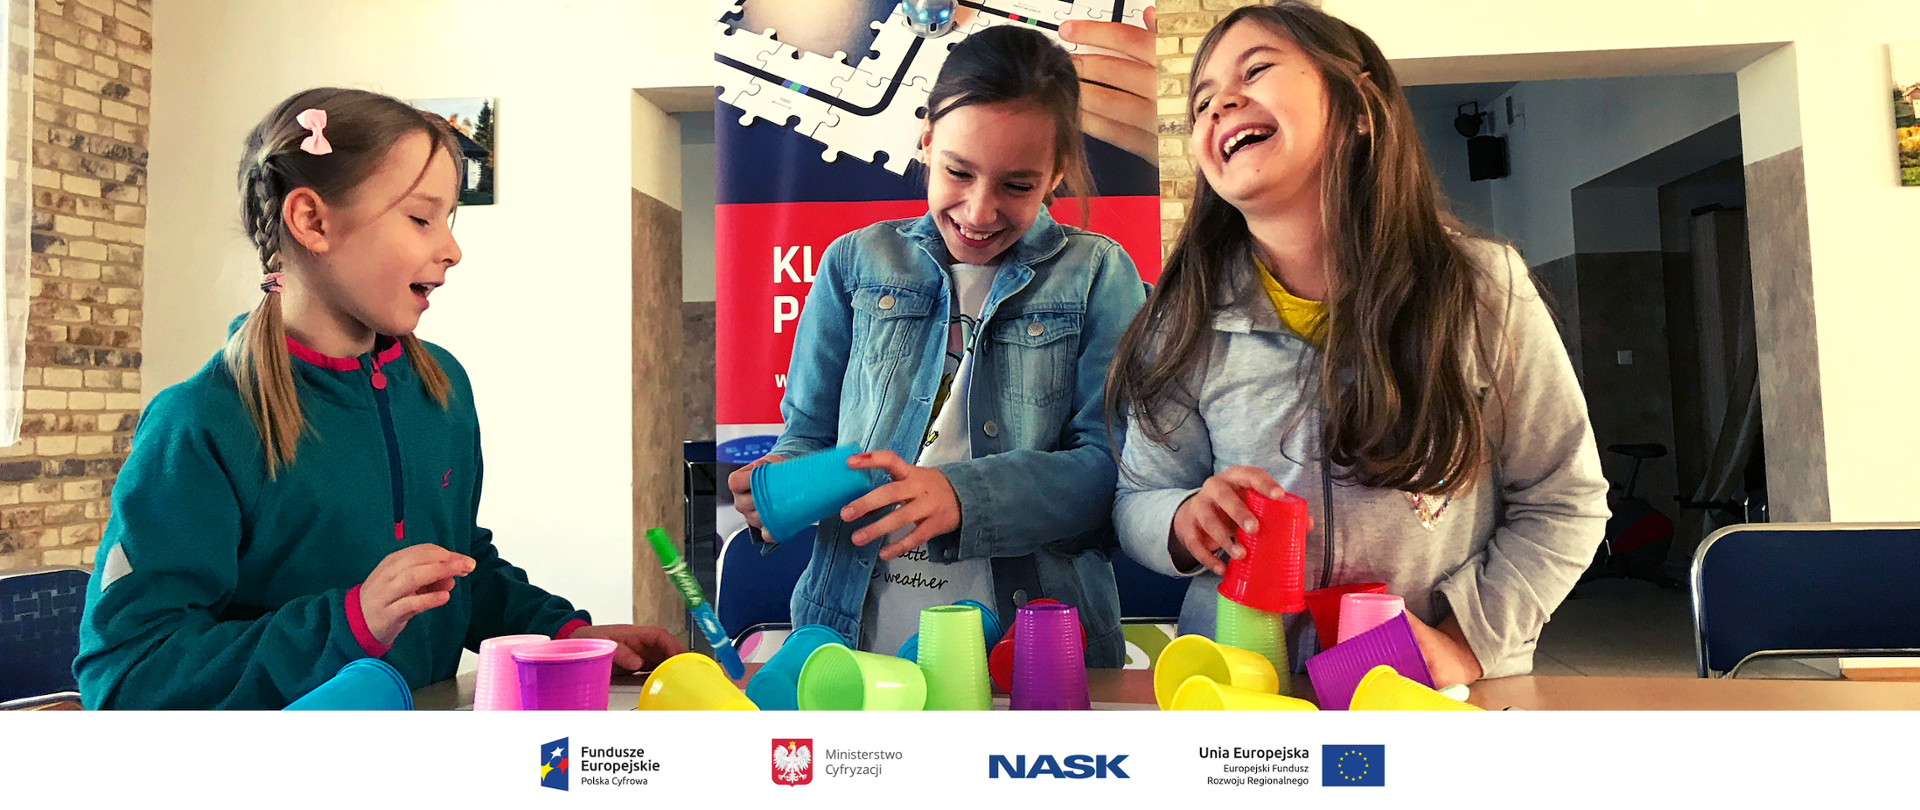 Na zdjęciu widać trzy dziewczynki bawiące się kolorowymi kubeczkami. Na dole zdjęcia umieszczone są logotypy: Fundusze Europejskie. Polska Cyfrowa, Ministerstwo Cyfryzacji, NASK oraz Unia Europejska. Europejski Fundusz Rozwoju Regionalnego. 